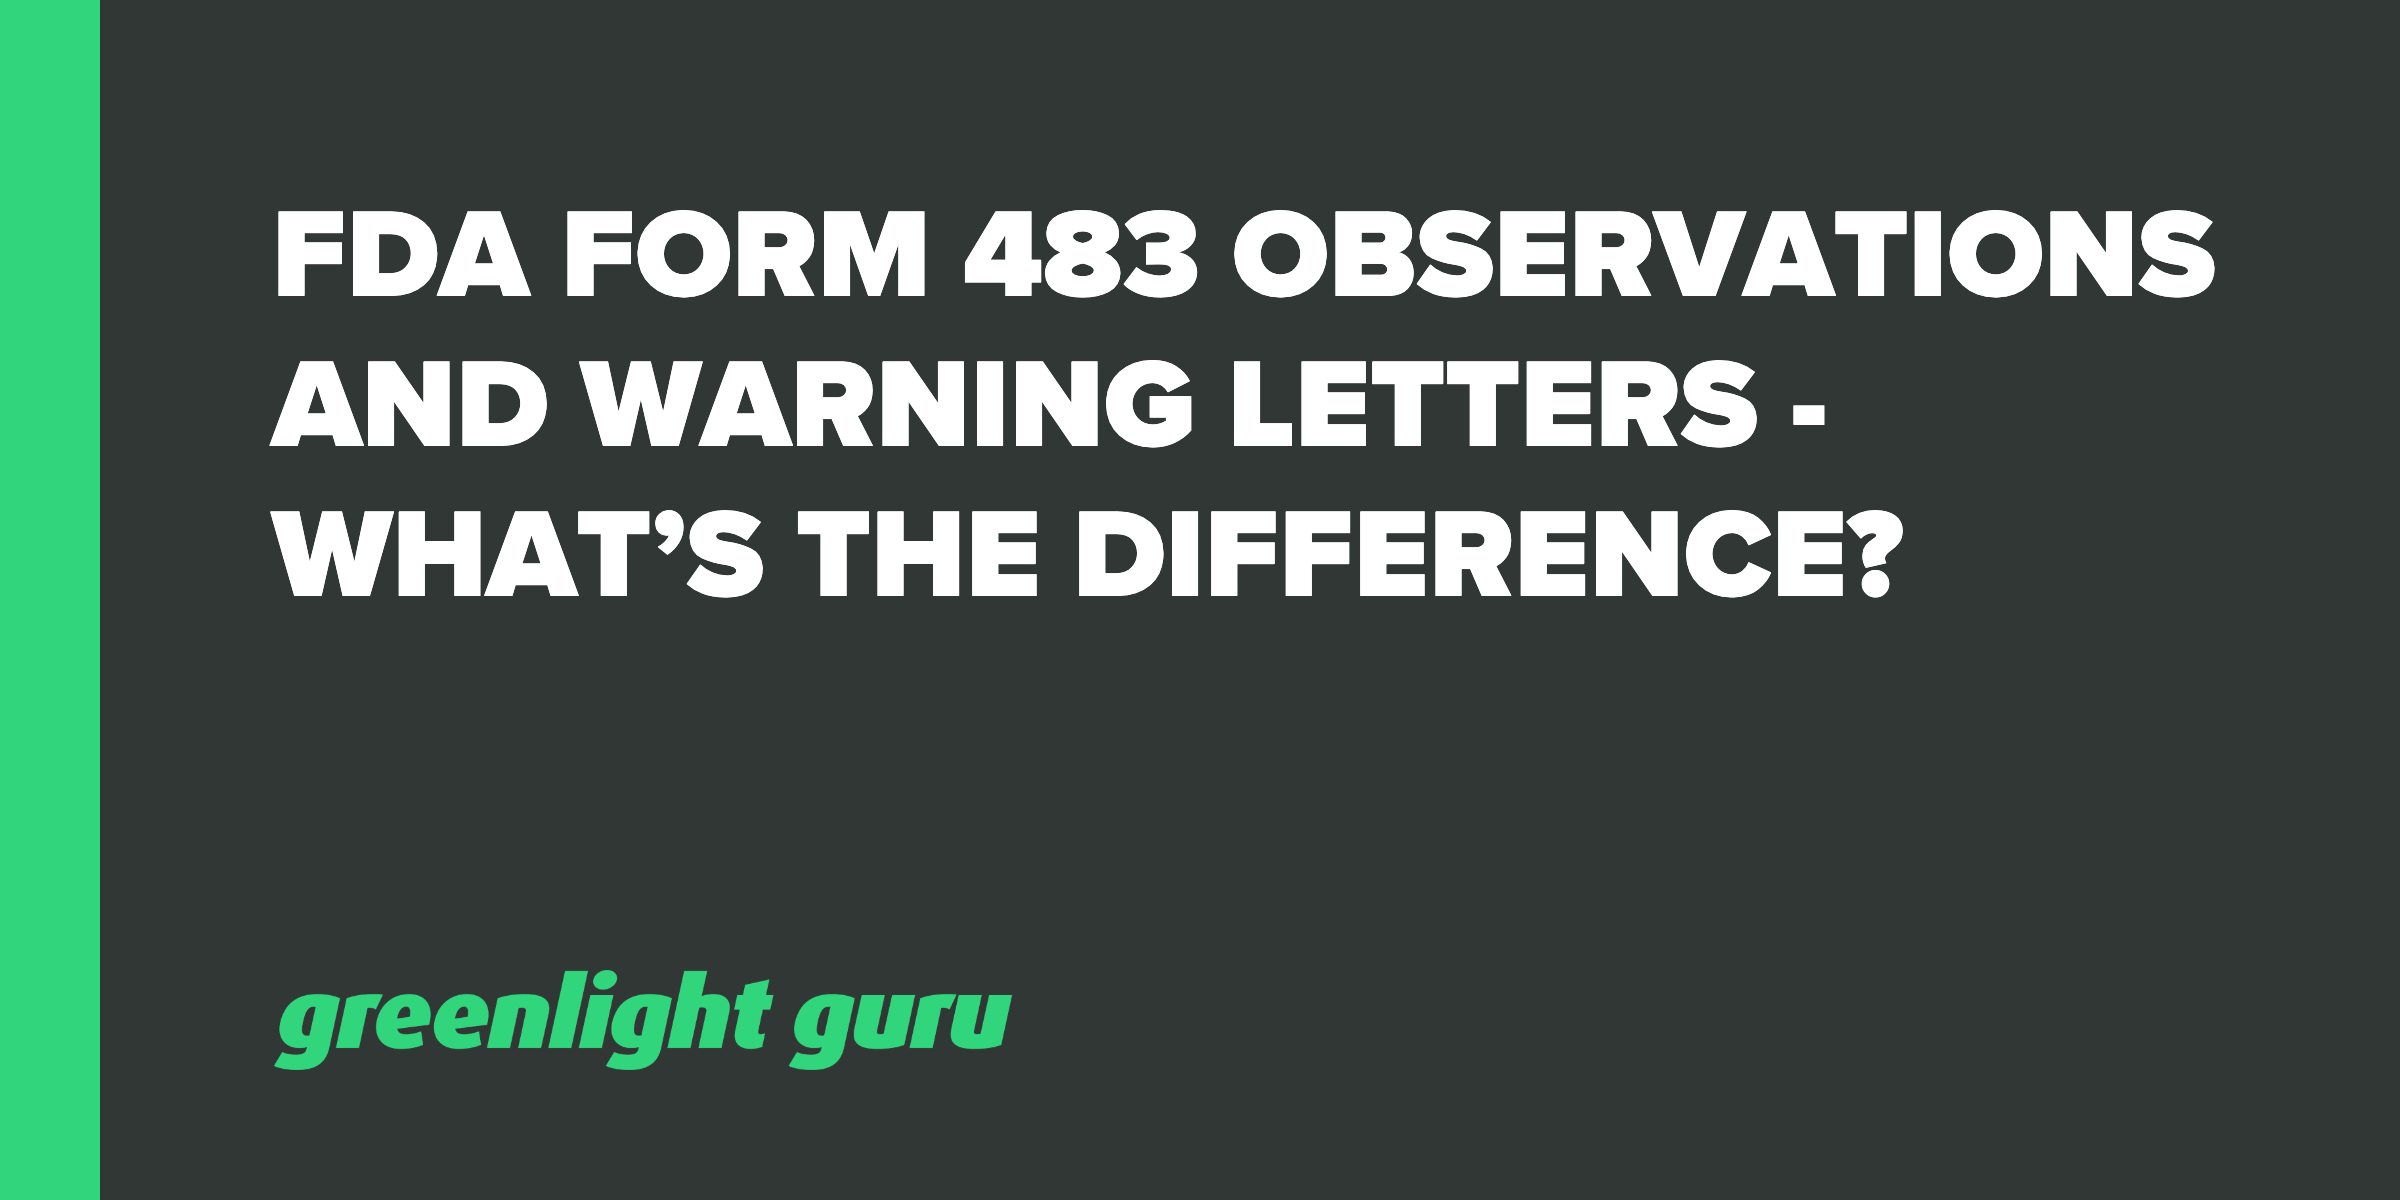 ¿Es un 483 lo mismo que una carta de advertencia?